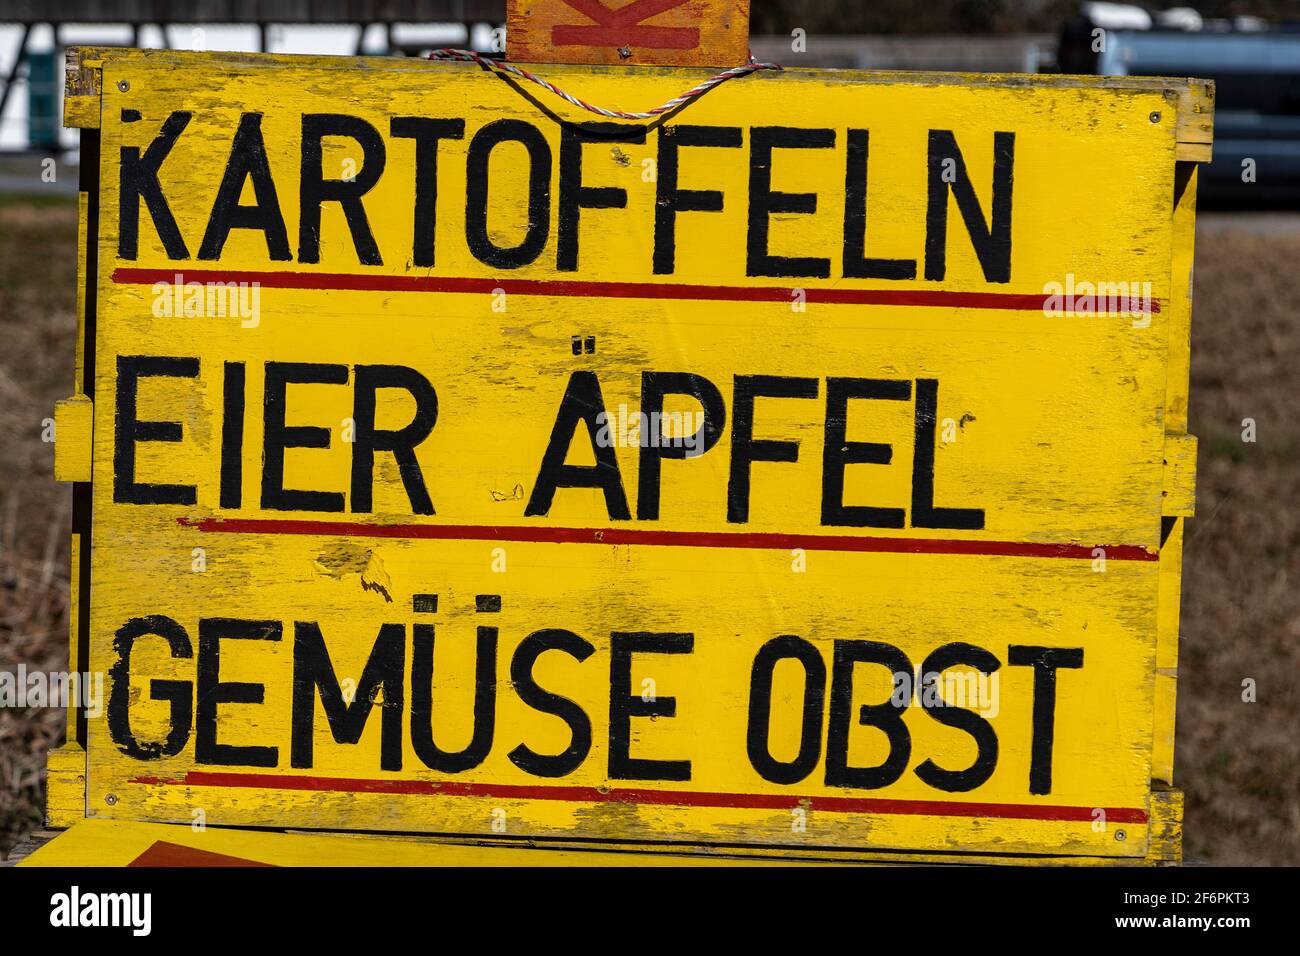 Signe de langue allemande pour Kartoffeln, pommes de terre, Eier, oeufs, Äpfel, Pommes, Gemüse, légumes et Obst, fruits, Mülheim an der Ruhr, Allemagne Banque D'Images